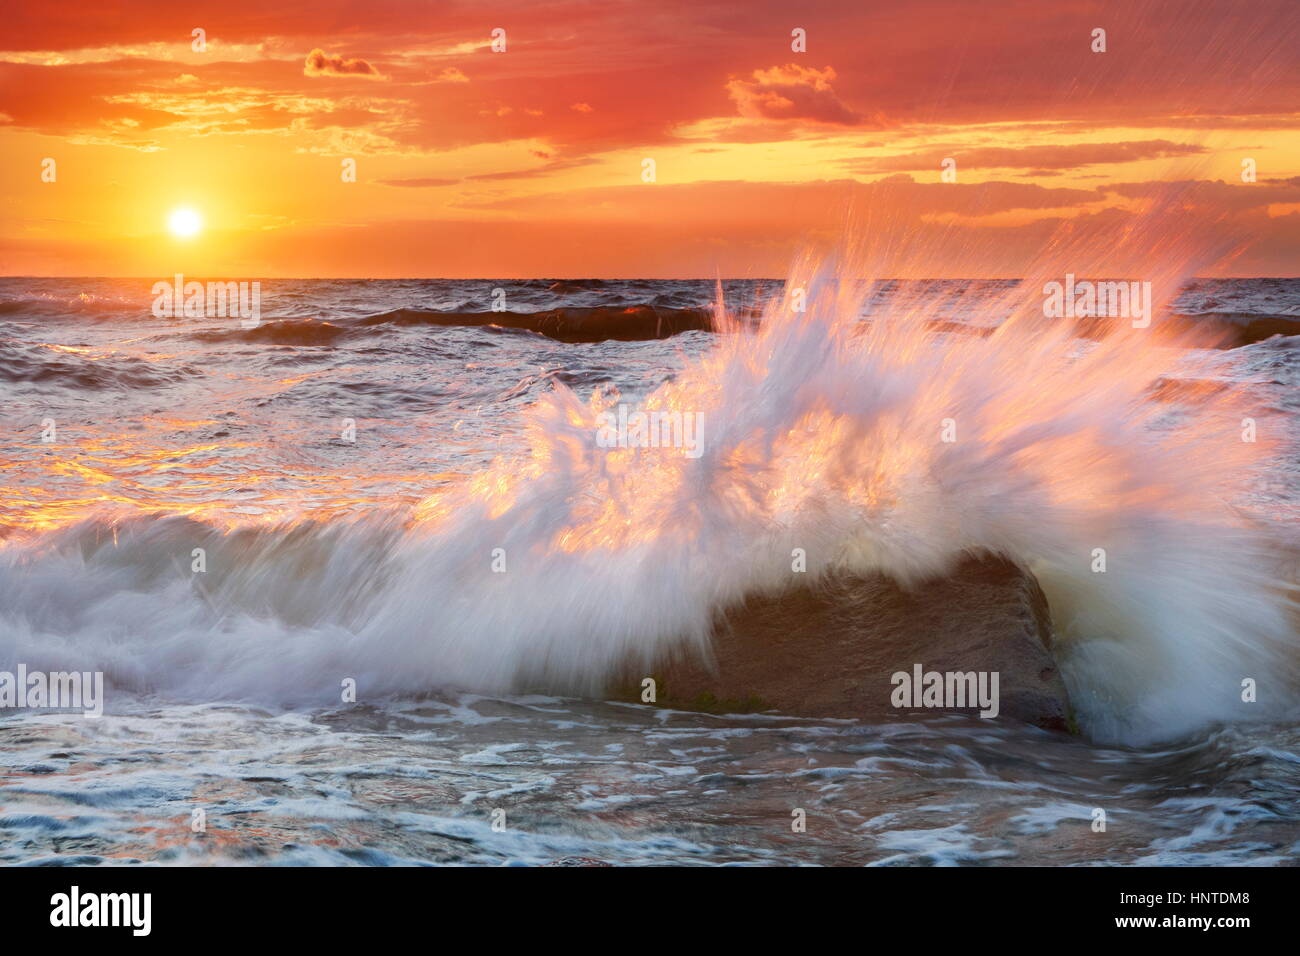 Mer vague à l'heure du coucher du soleil, de la mer Baltique, la Pologne, la Poméranie paysage Banque D'Images